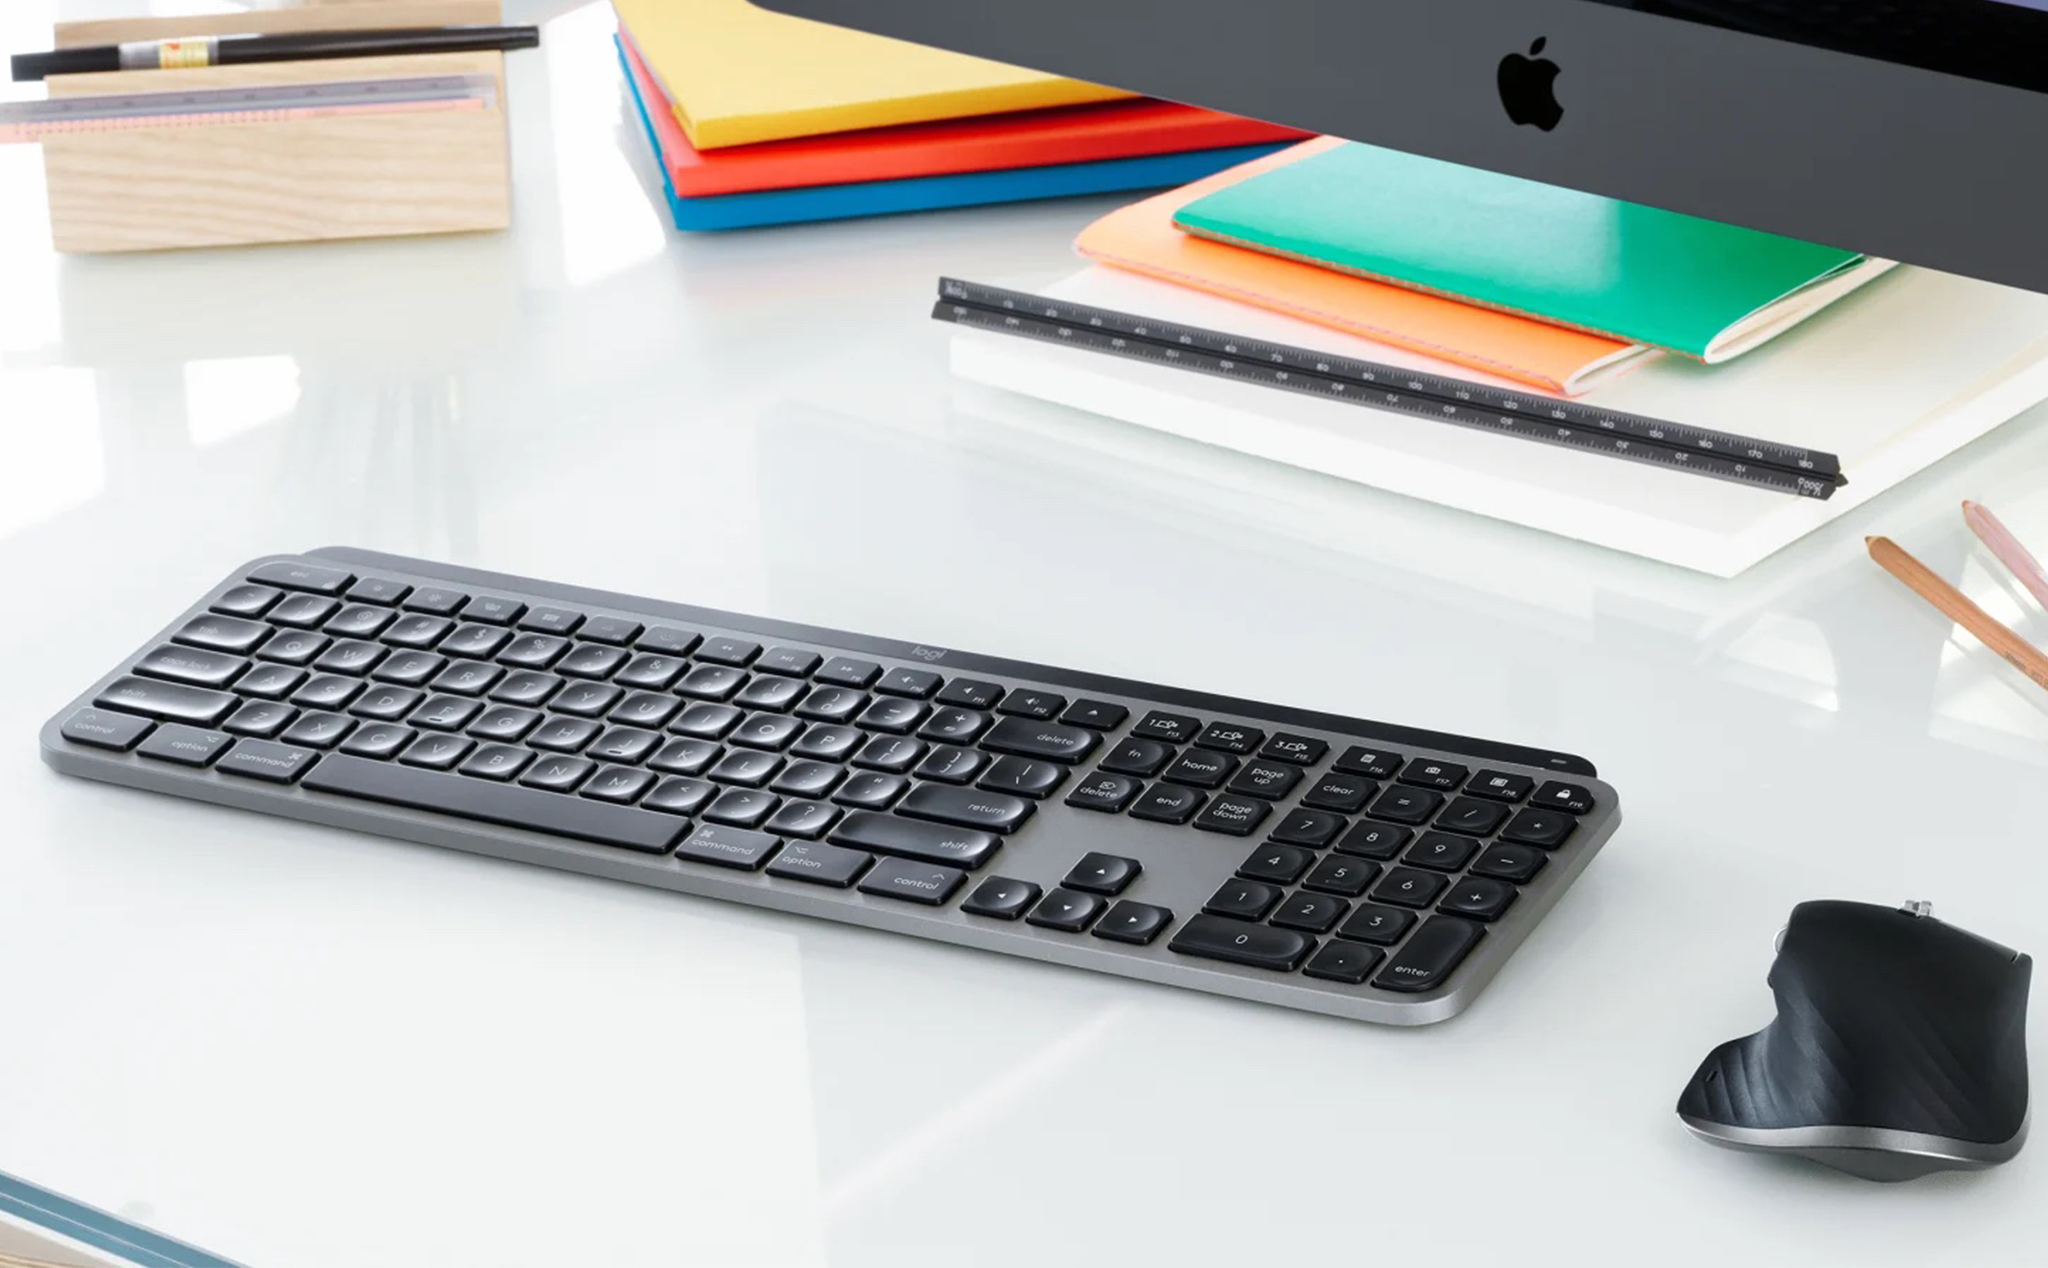 Bạn là người sáng tạo và đang sử dụng Mac? Đừng bỏ lỡ bàn phím MX Keys cho Mac – sản phẩm được thiết kế với nhiều tính năng độc đáo giúp cho công việc của ban trở nên dễ dàng và hiệu quả hơn bao giờ hết.